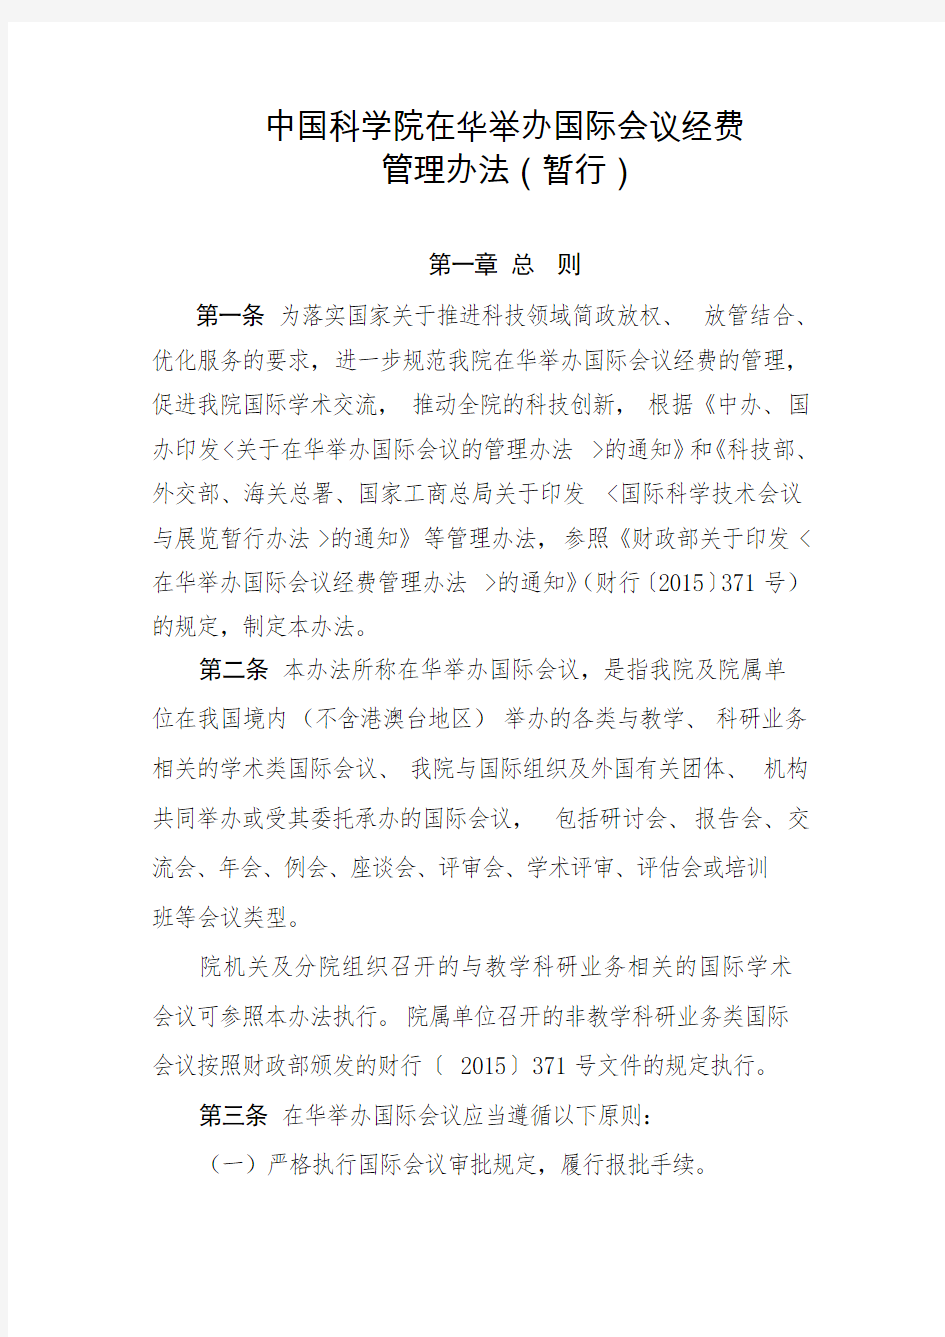 中国科学院在华举办国际会议经费管理办法暂行